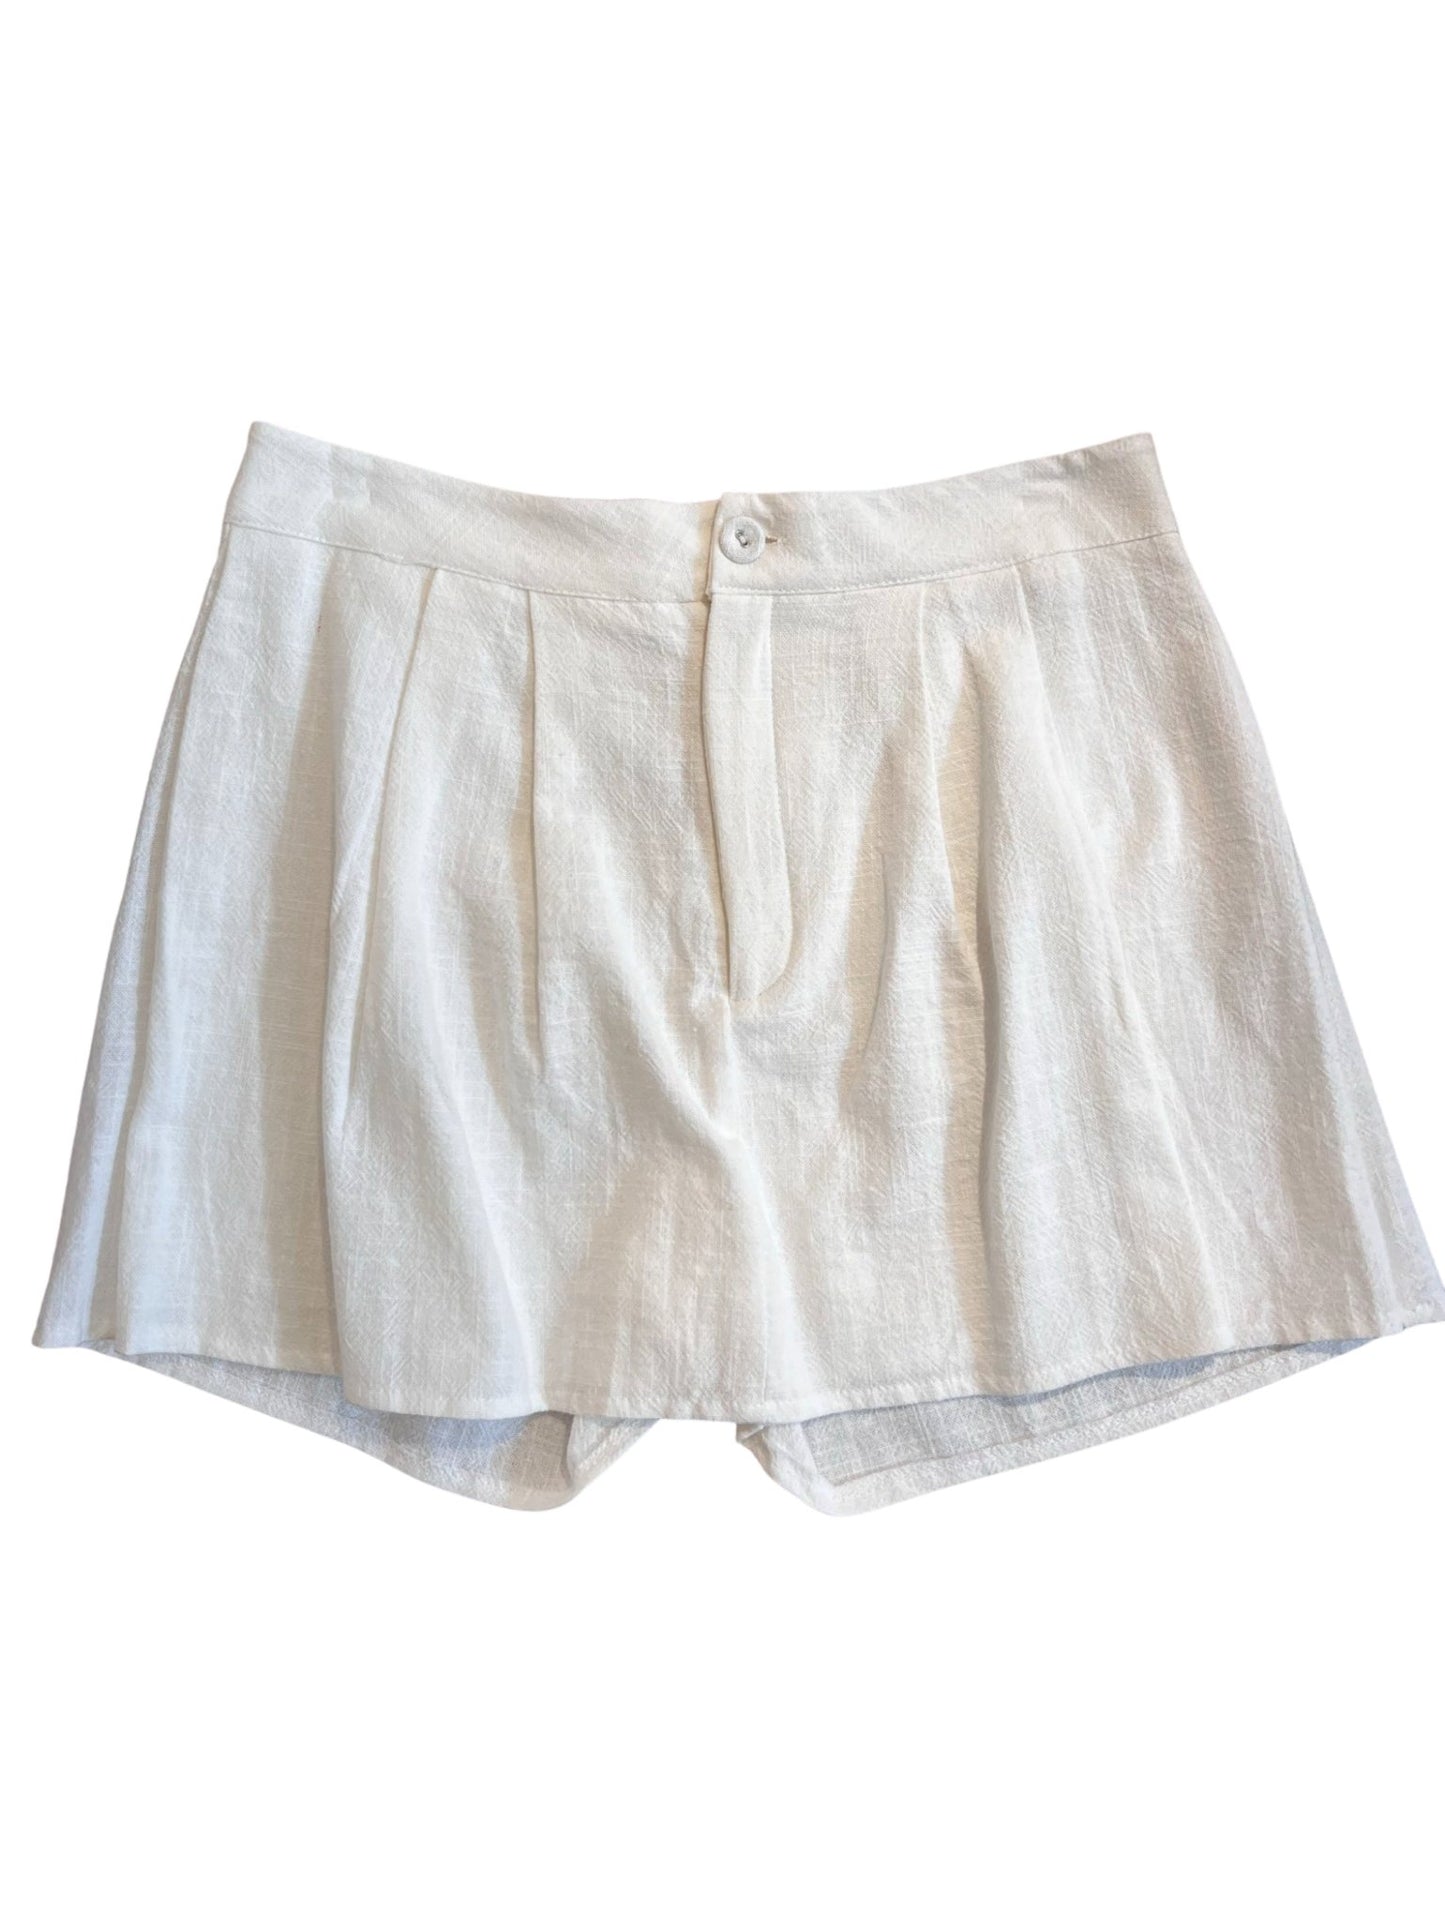 100% Organic Fabric Skort - White - Bottom - LussoCA